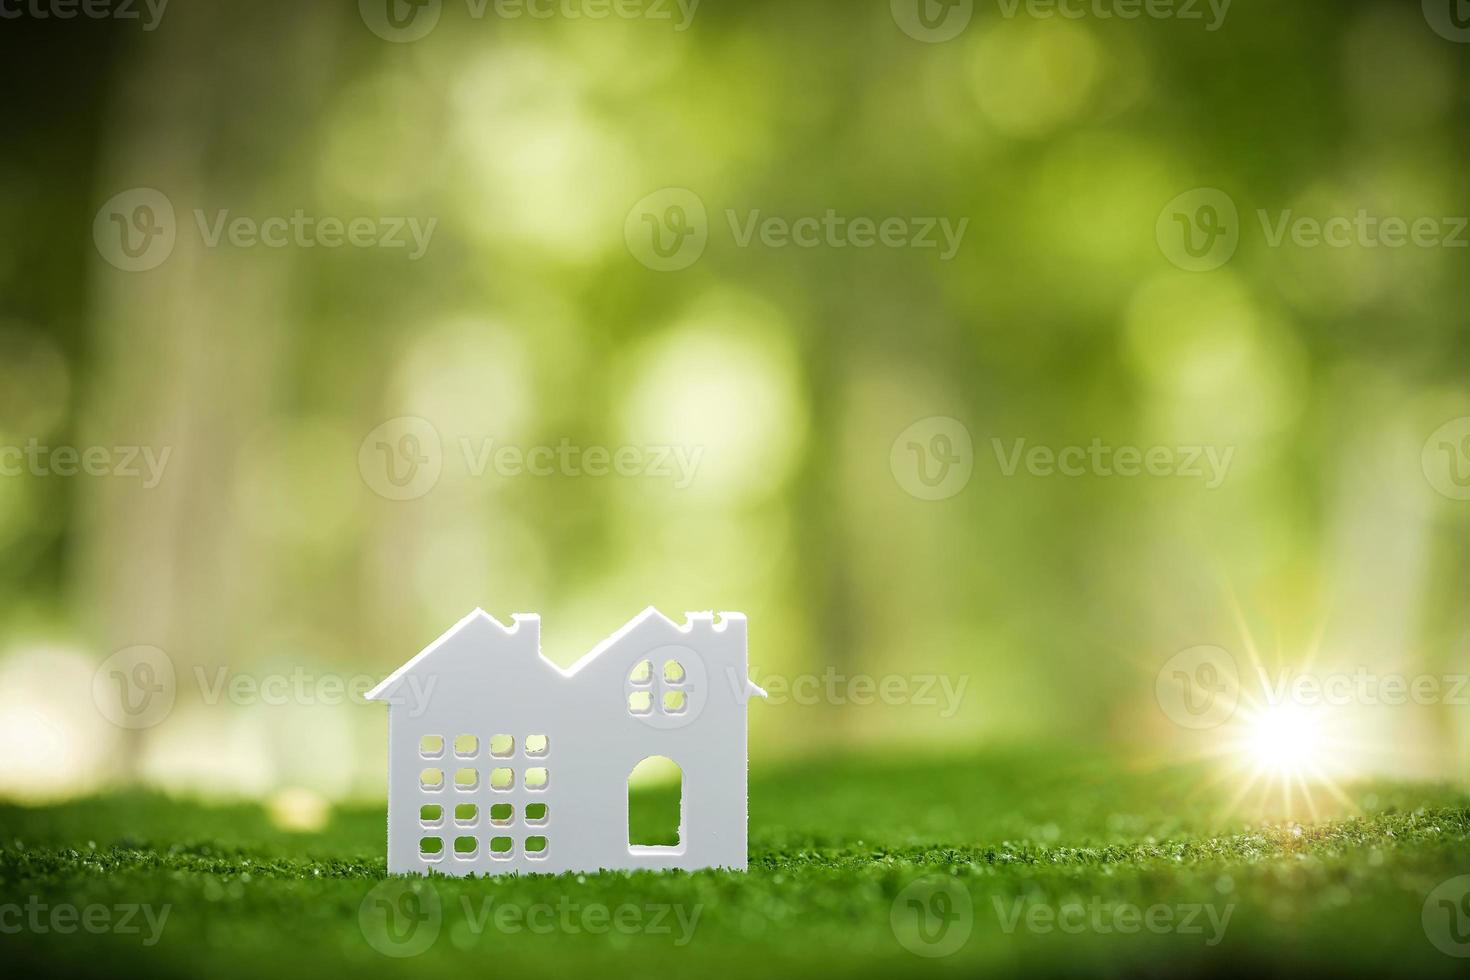 miljömässigt miljövänlig verklig egendom hus. små modell byggnad fast egendom Hem på gräs i grön natur ekologi. hållbar energi bevarande bostads- design och sälja - hyra företag begrepp foto